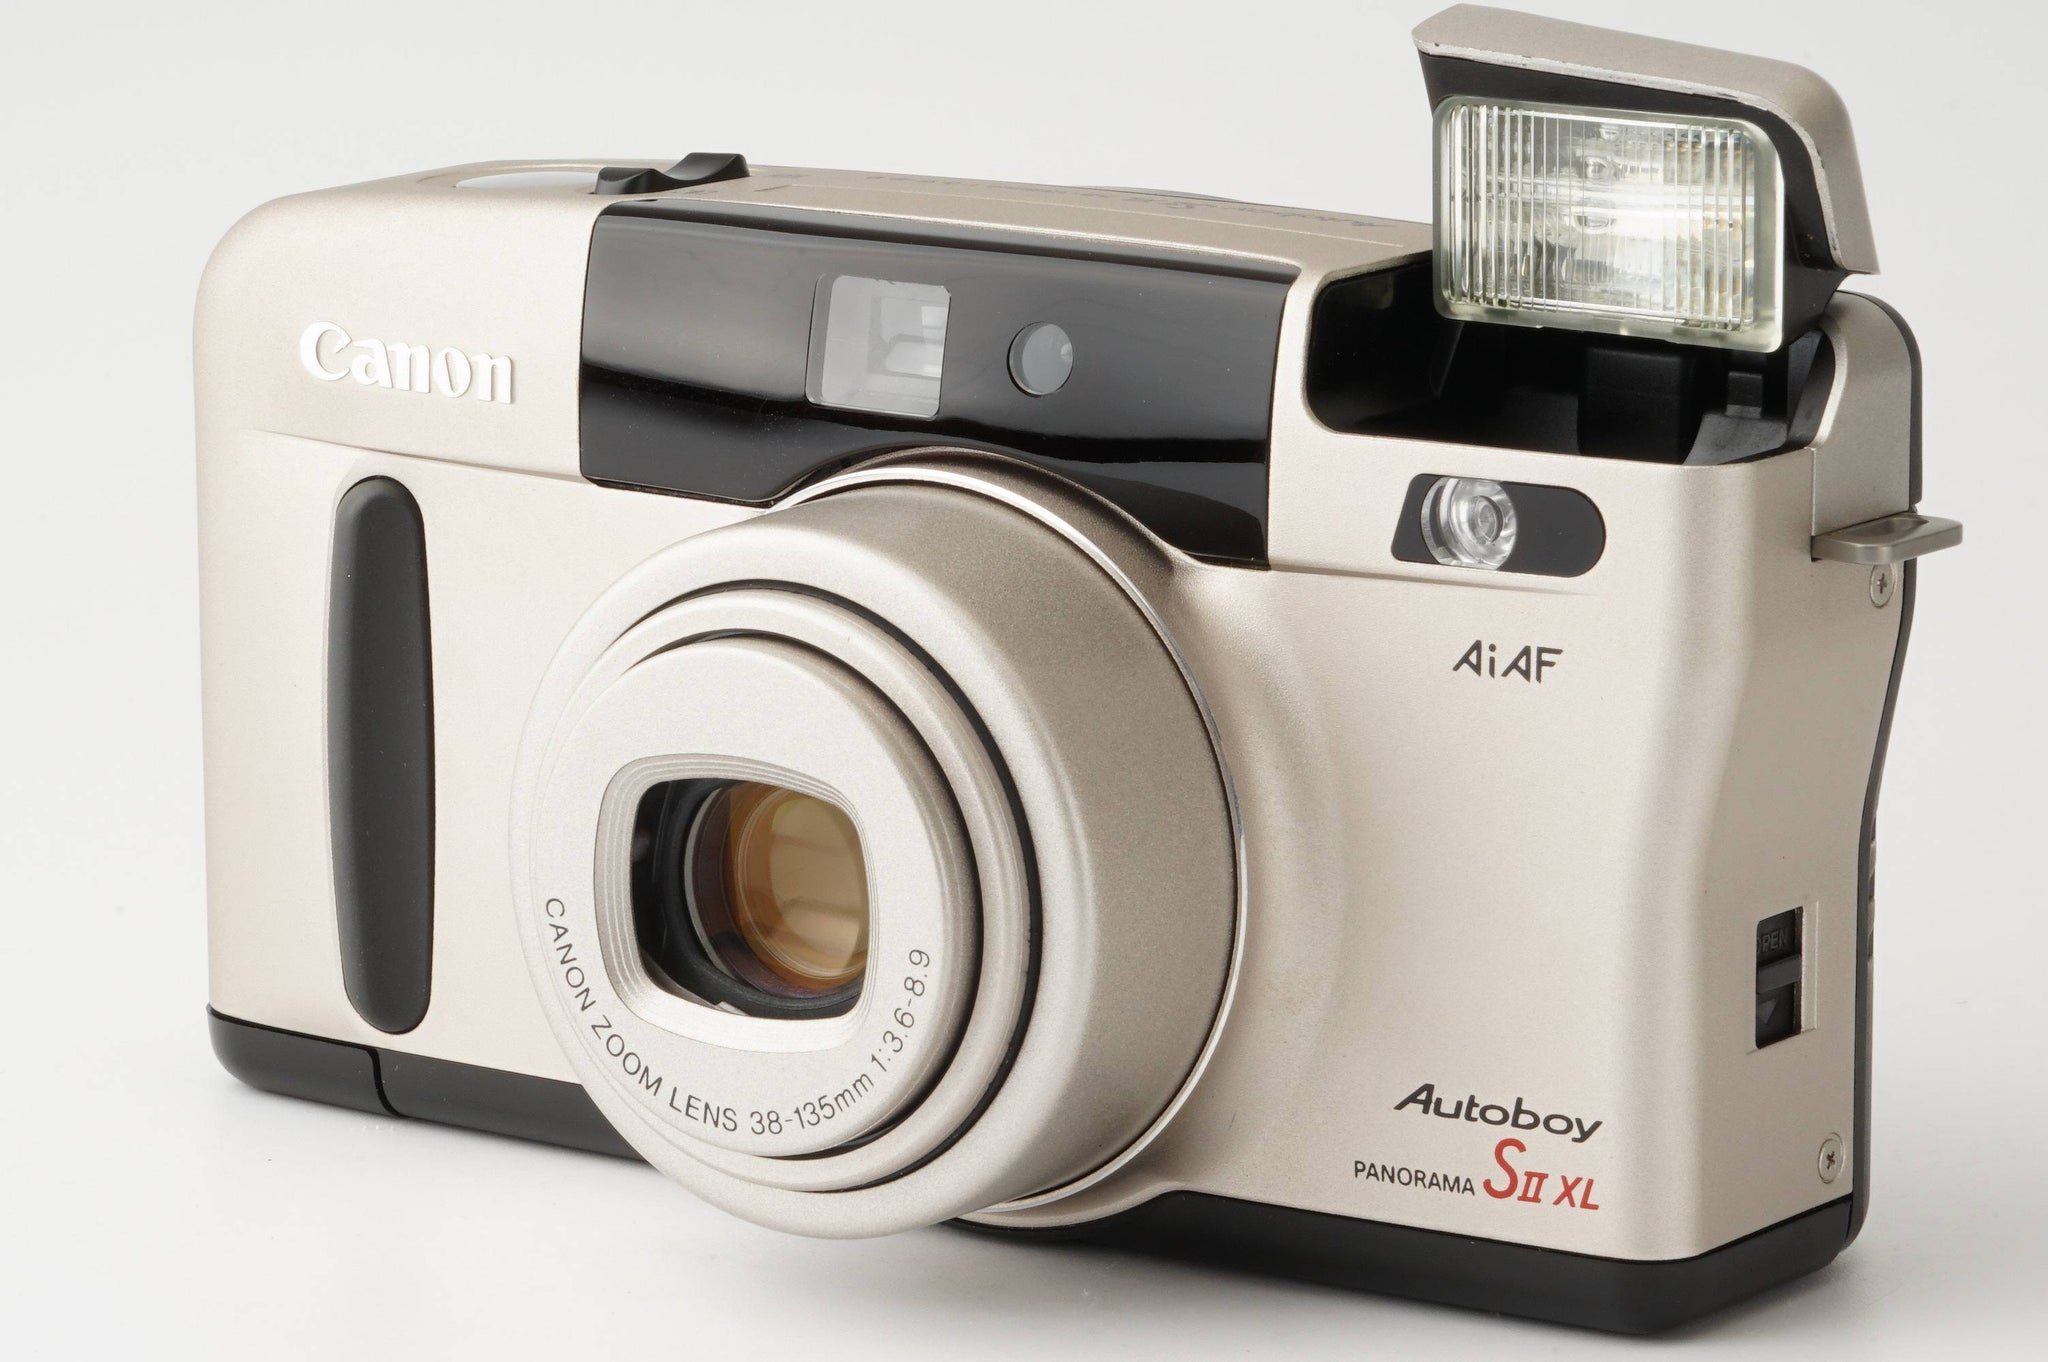 Canon Autoboy S II XL フィルムカメラ - フィルムカメラ